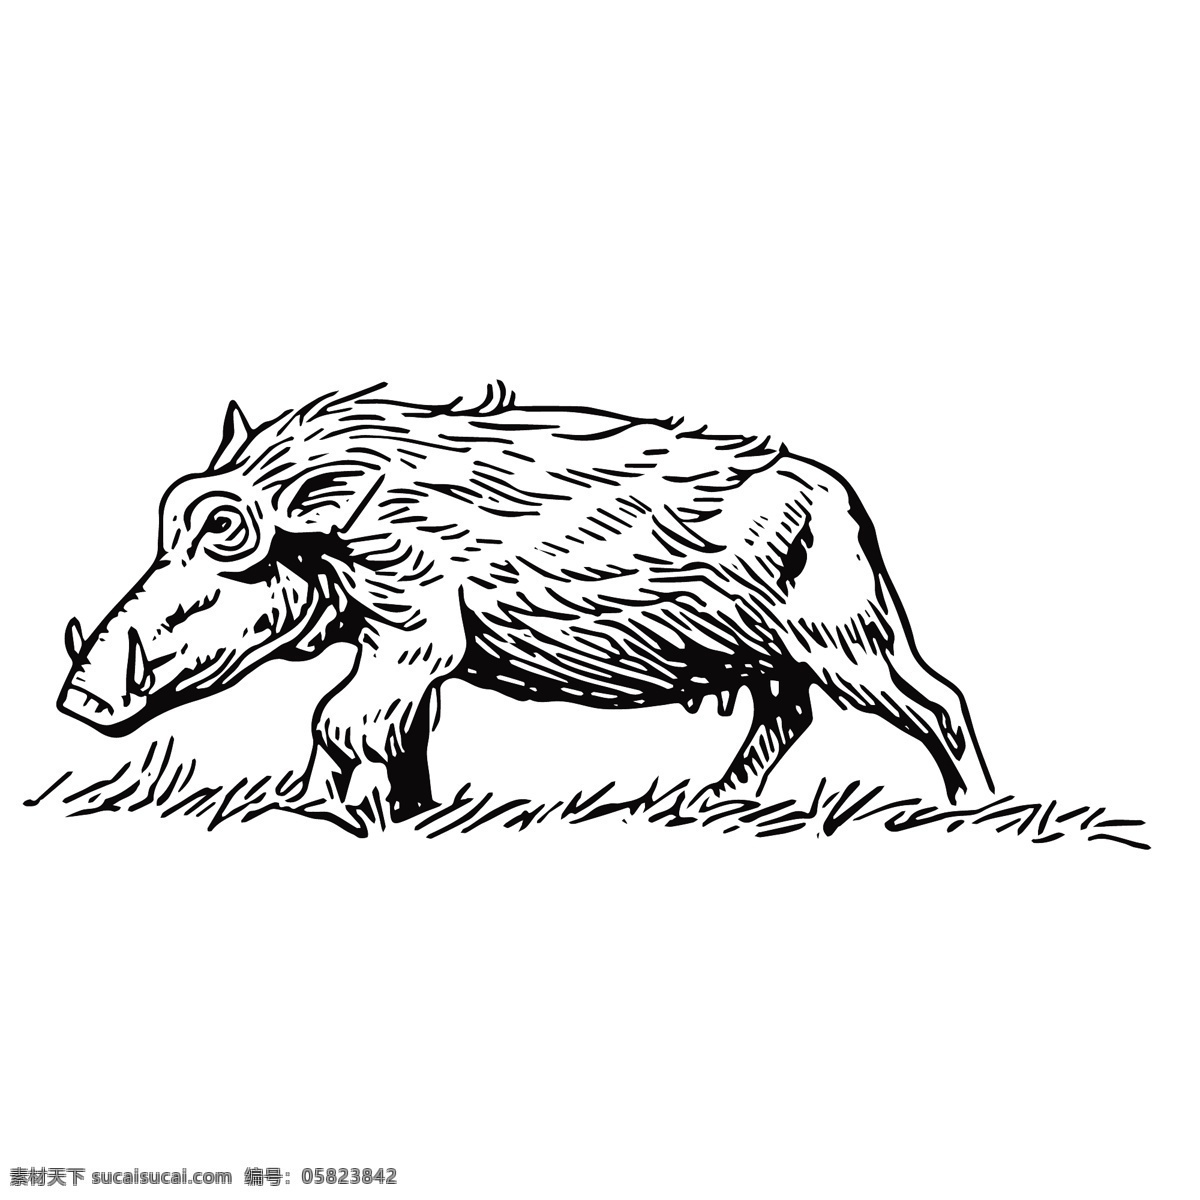 野猪绘画 野生动物 素描 绘画 创意 插画 图谱 生物 科学研究 线条 爬虫 爬行动物 家禽